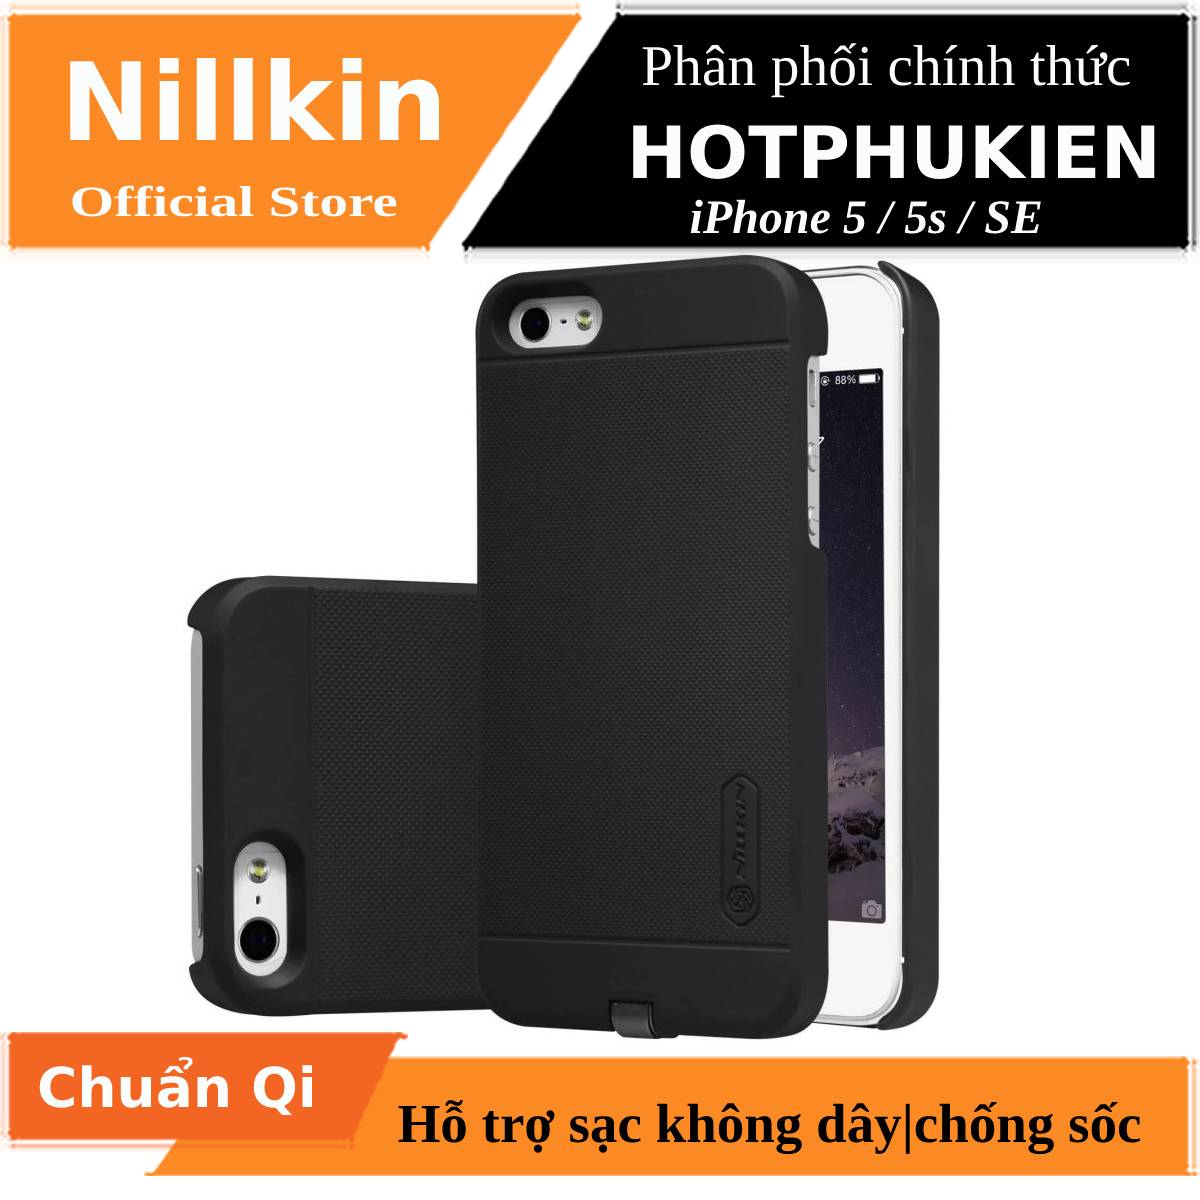 Ốp lưng chống sốc hỗ trợ sạc không dây cho iPhone 5 / iPhone 5s / iPhone SE hiệu Nillkin Magic